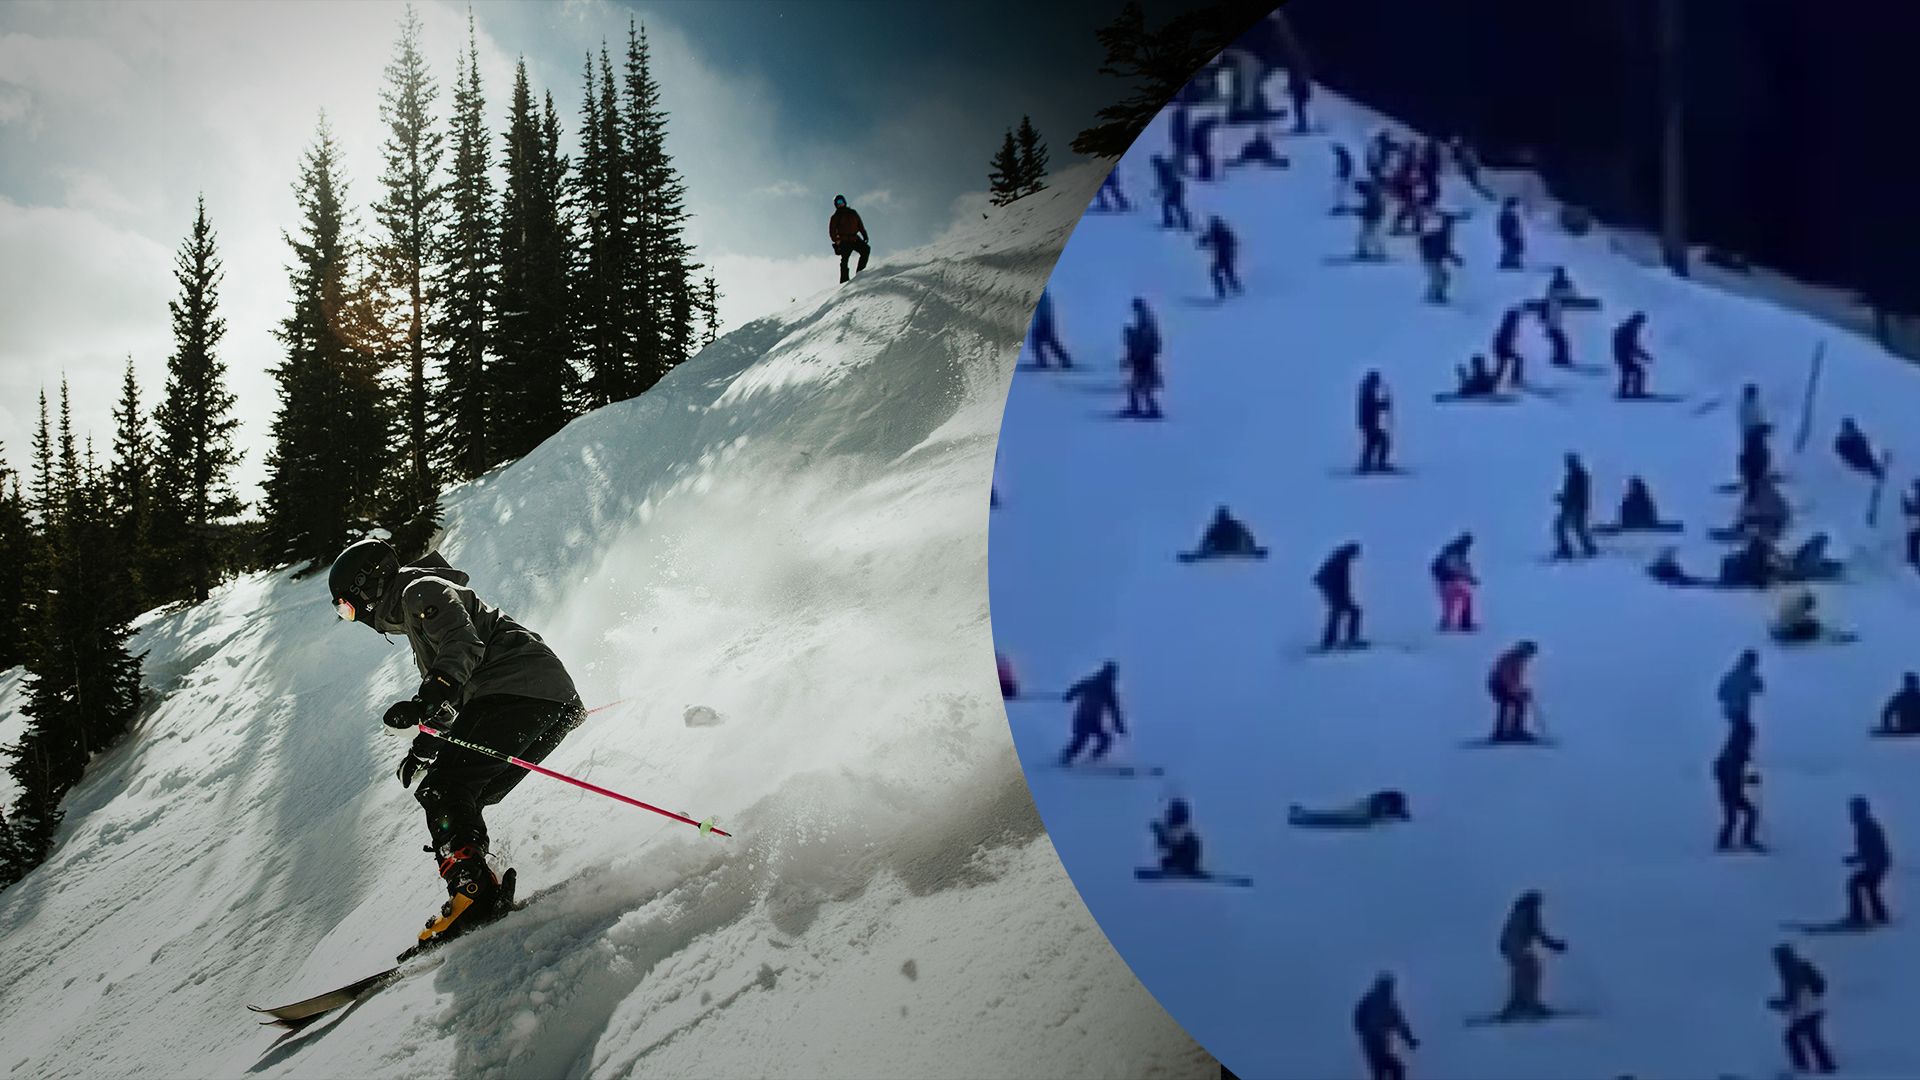  Пьяные лыжники заблокировали склон на горнолыжном курорте Ишгль